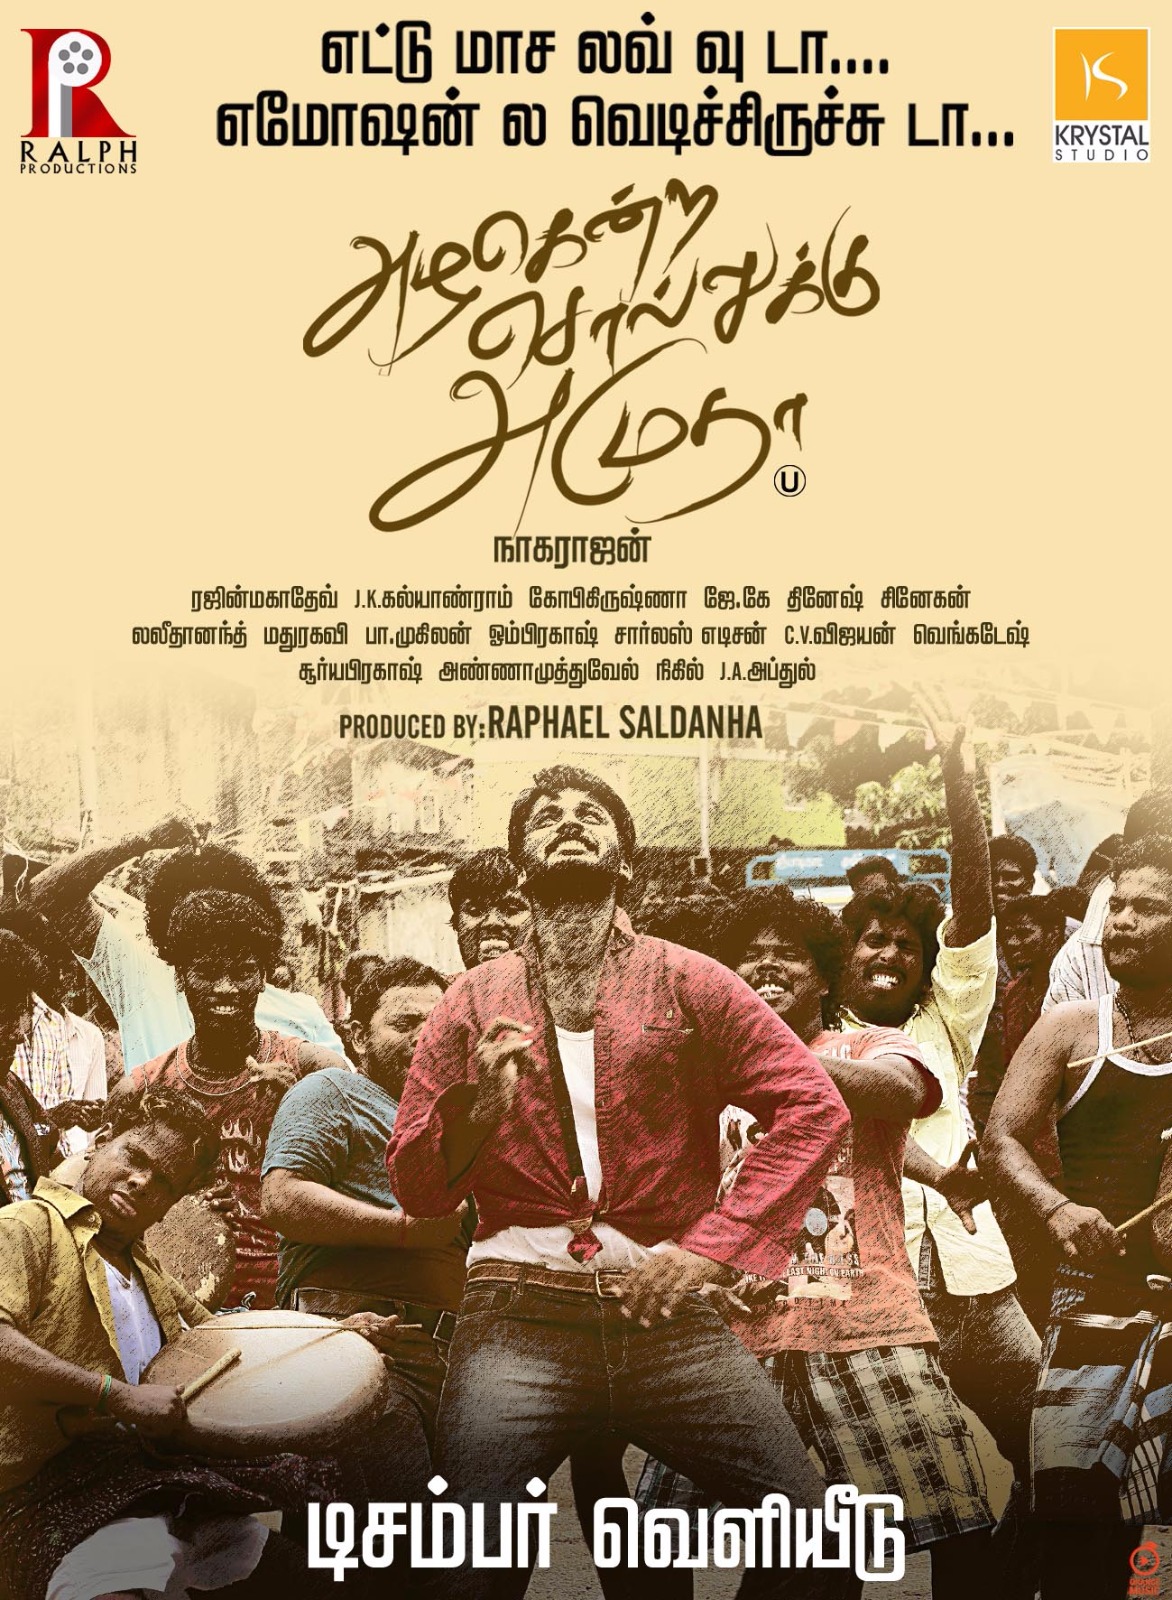 Azhagendra Sollukku Amudha Movie Release On December 2nd Posters (5)